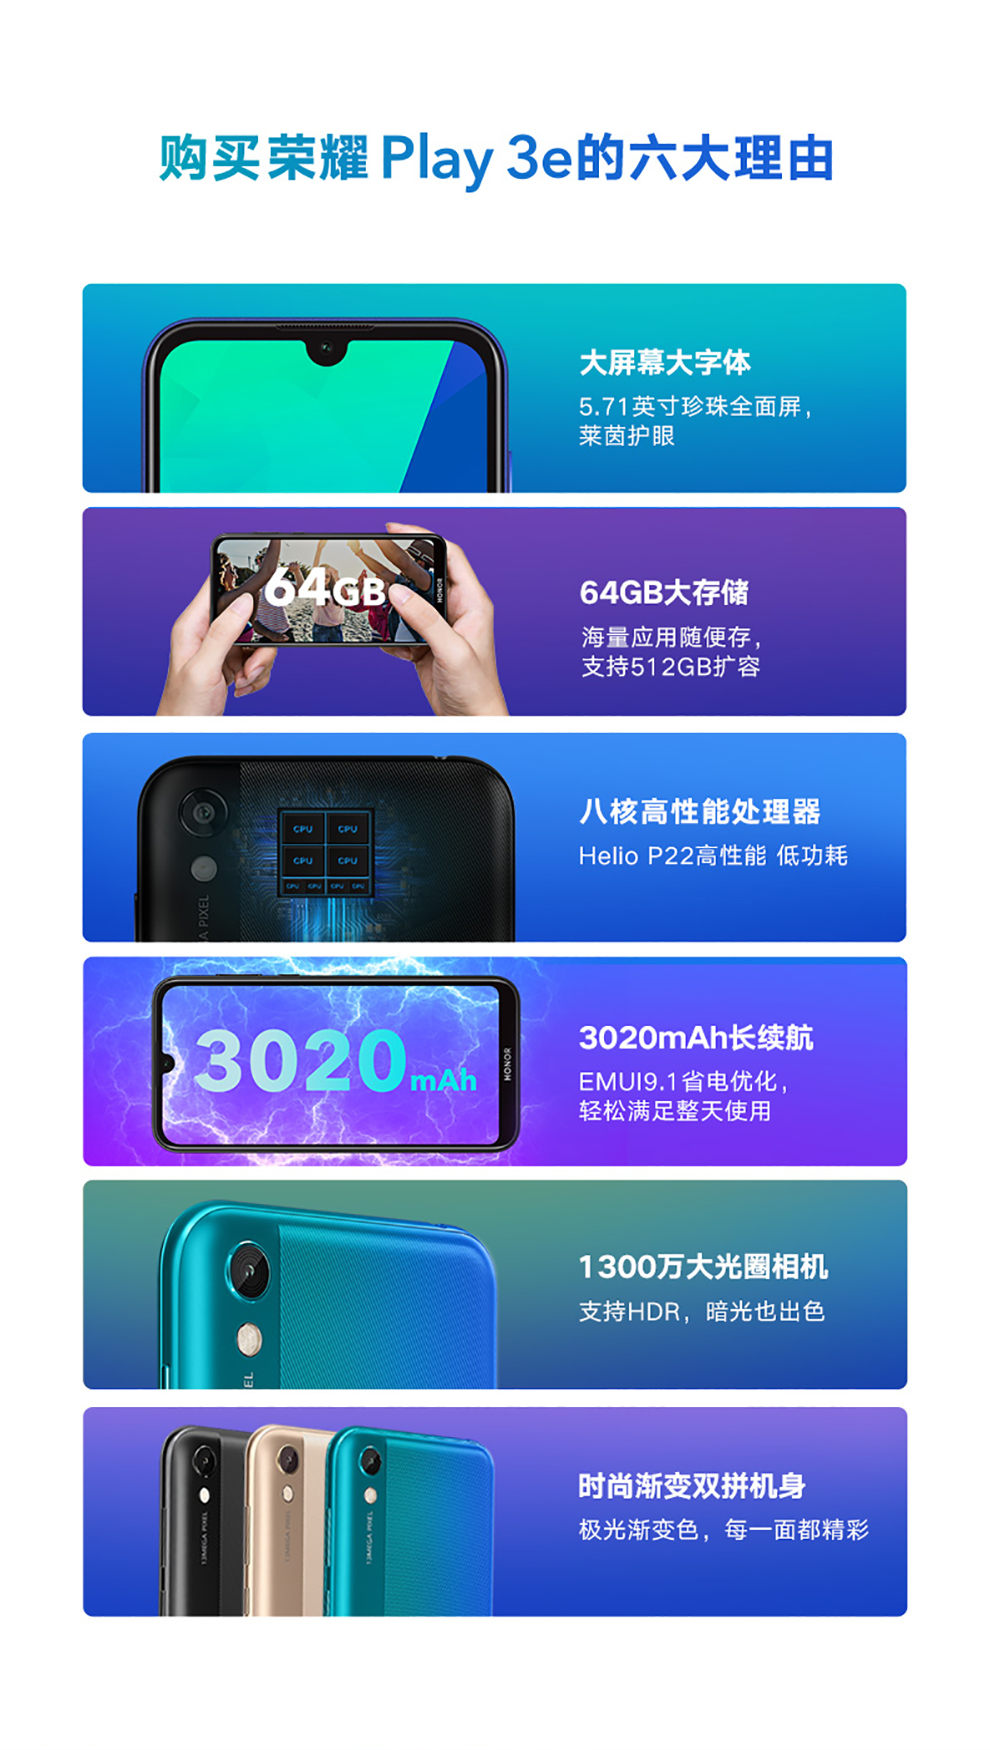 中山手机网 华为(huawei) 华为 荣耀play3e手机专卖